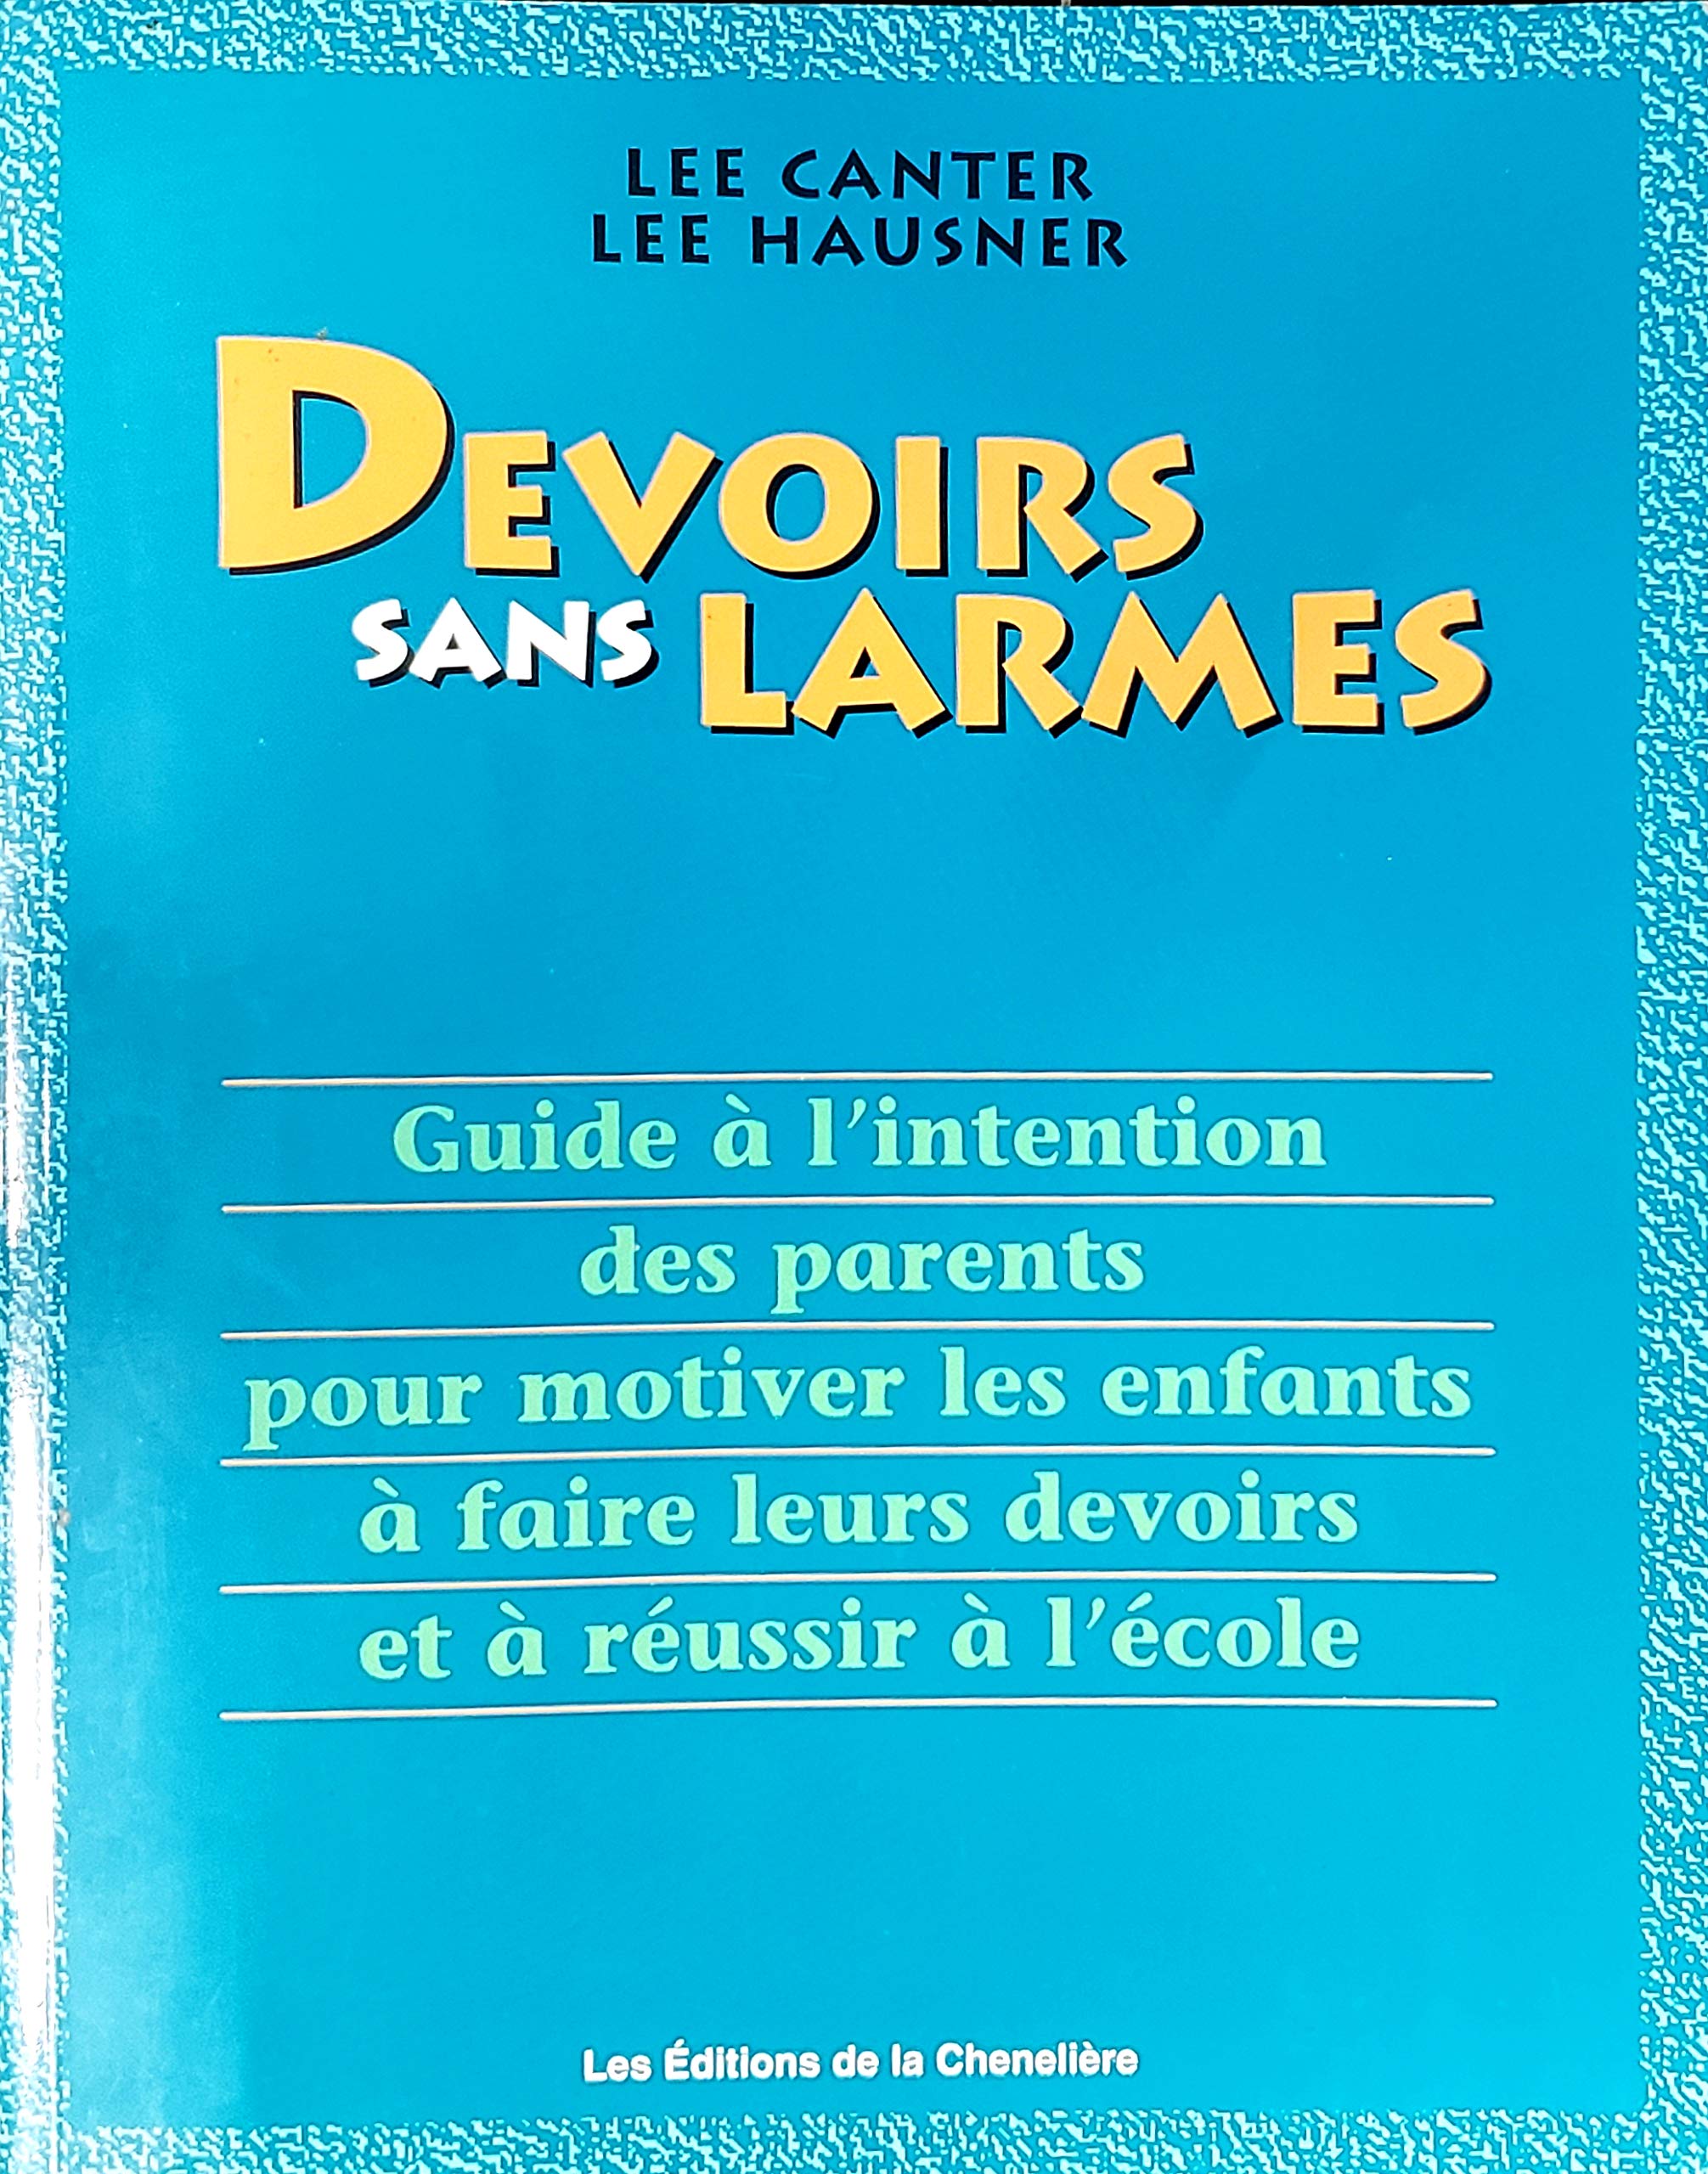 Livre ISBN 2893103154 Devoirs sans larmes : Guide à l'intention des parents pour motiver les enfants à faire leurs devoirs et à réussir à l'école (Lee Canter)